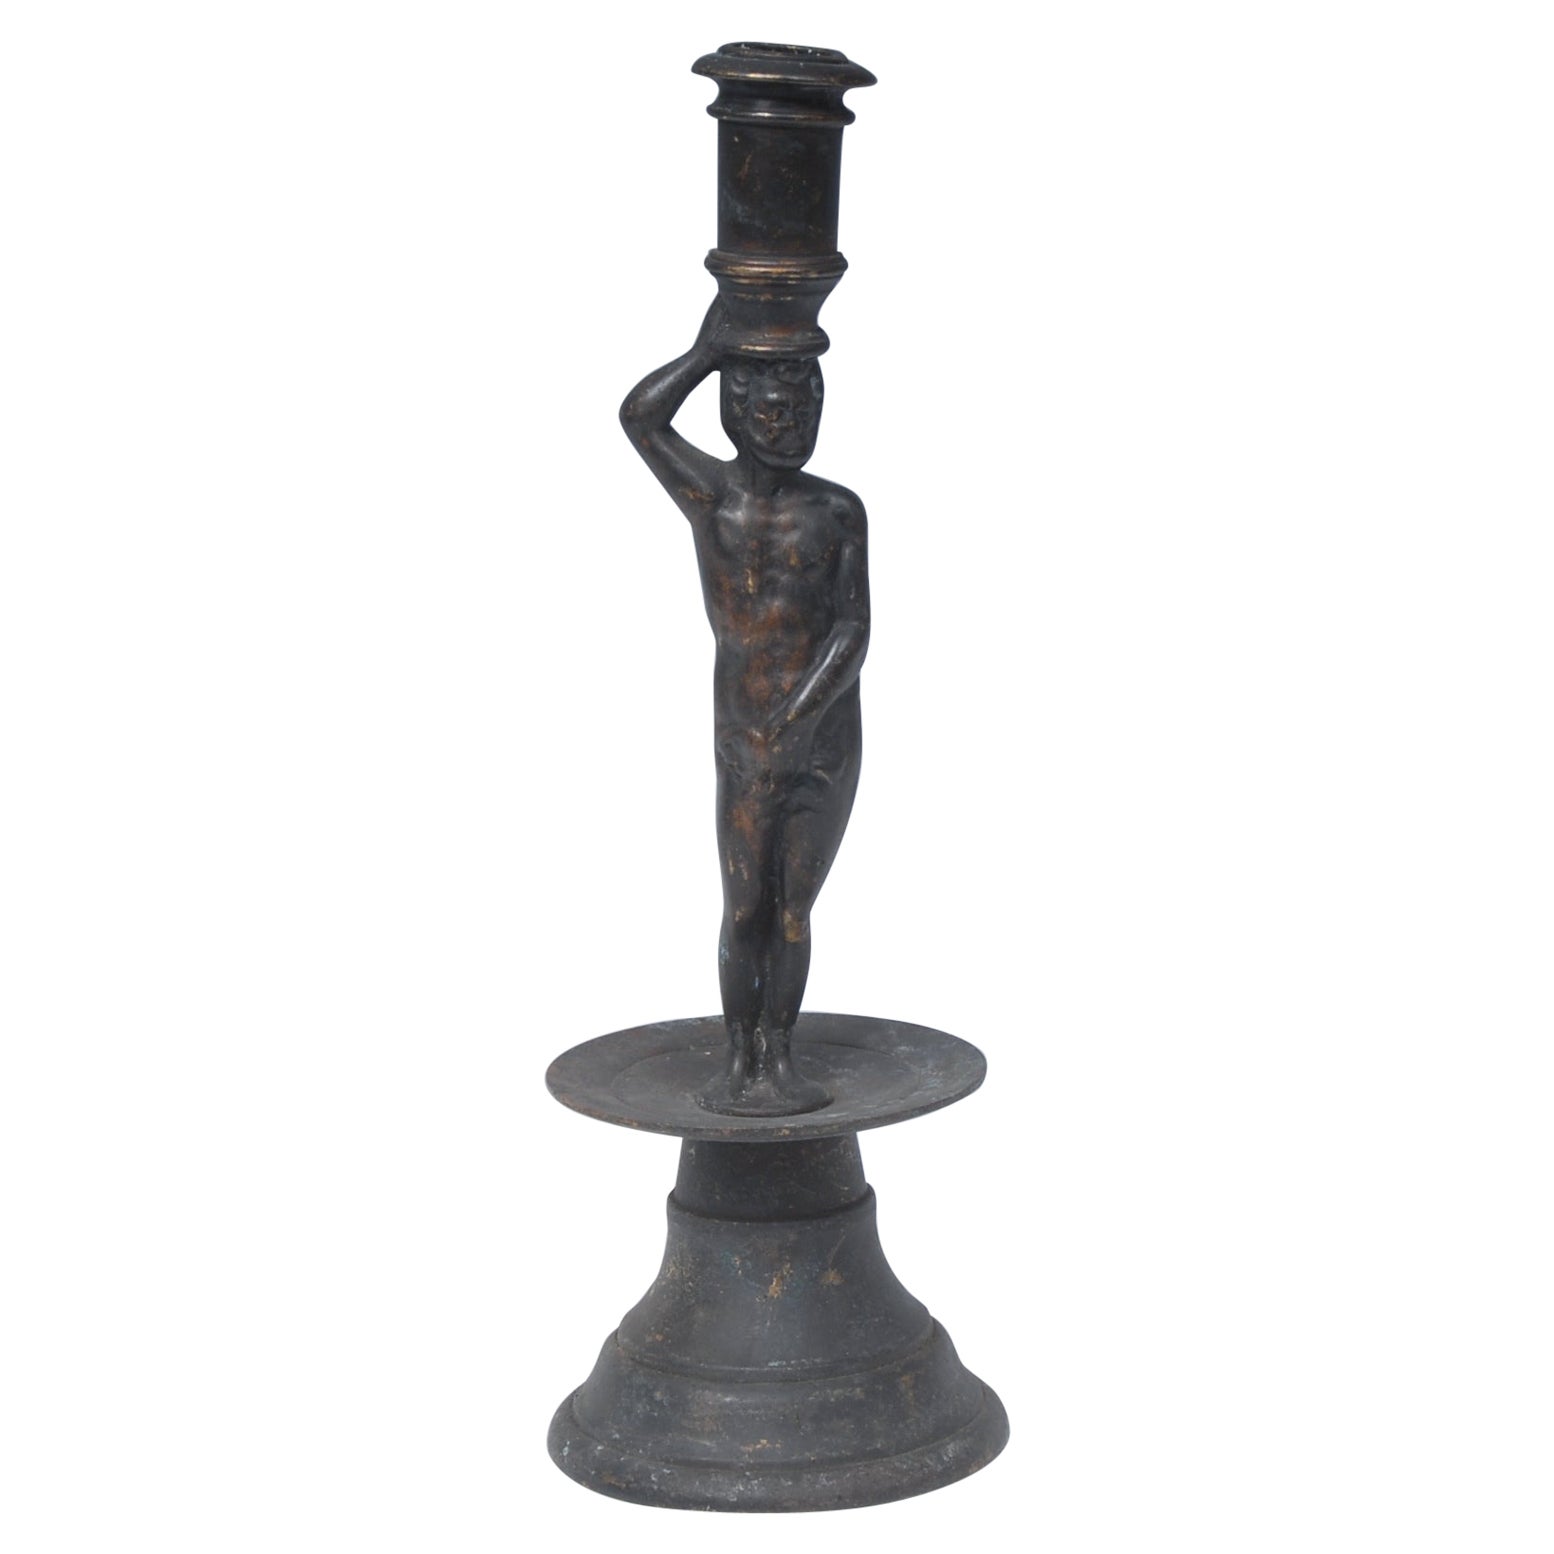 Candlestick Figurative Adam Brass Antiquarian Renaissance Manner 28.5cm 11" high